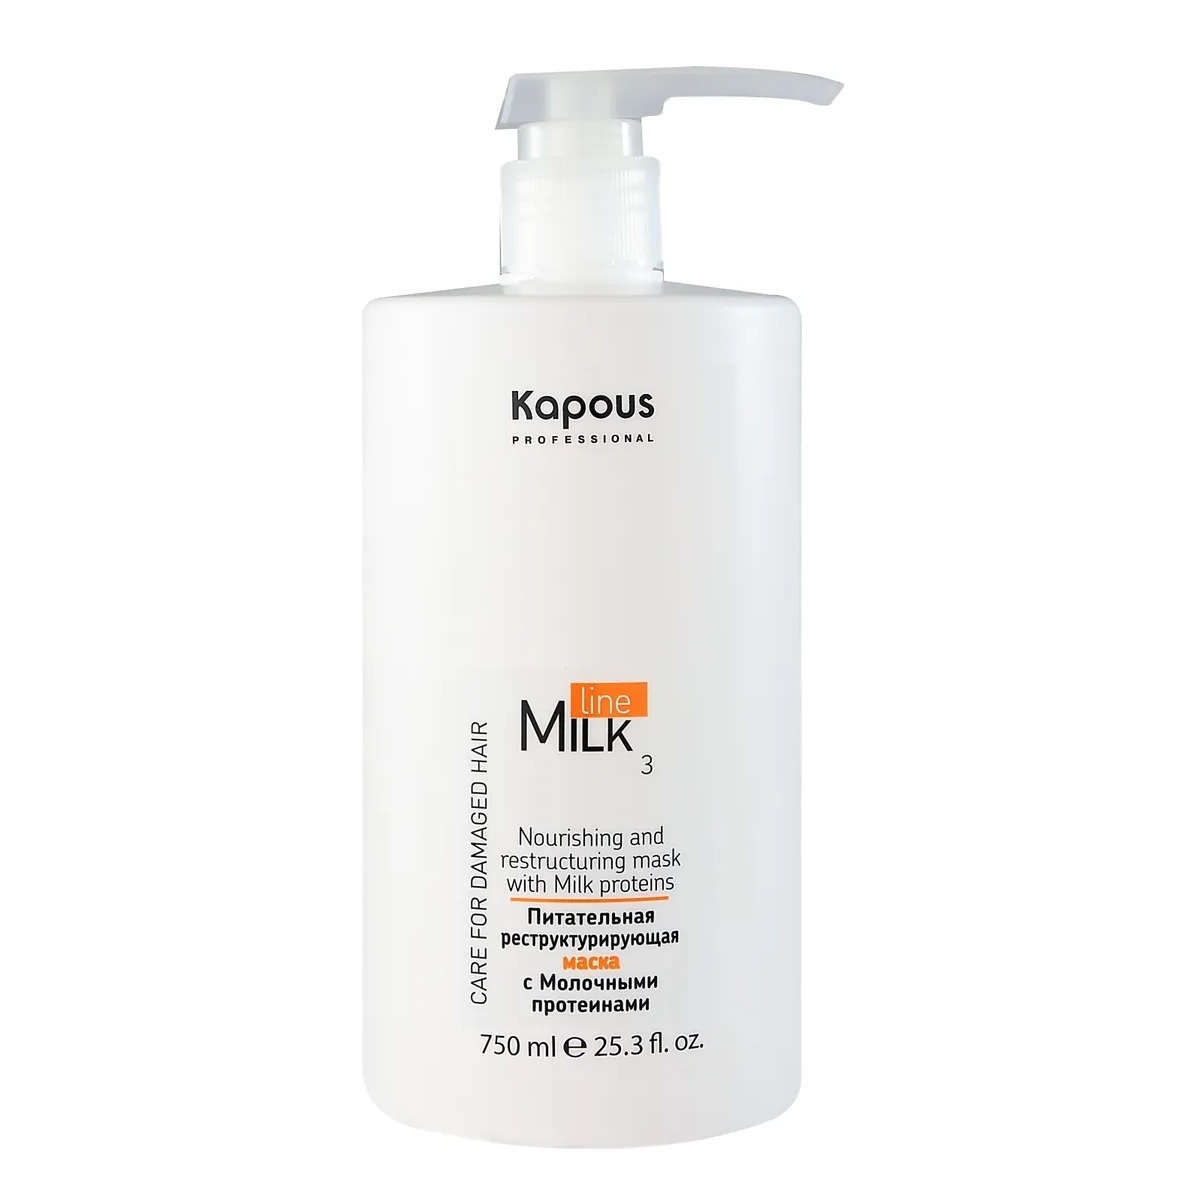 KAPOUS, Питательная реструктурирующая маска с молочными протеинами для волос Milk Line, 750 мл.